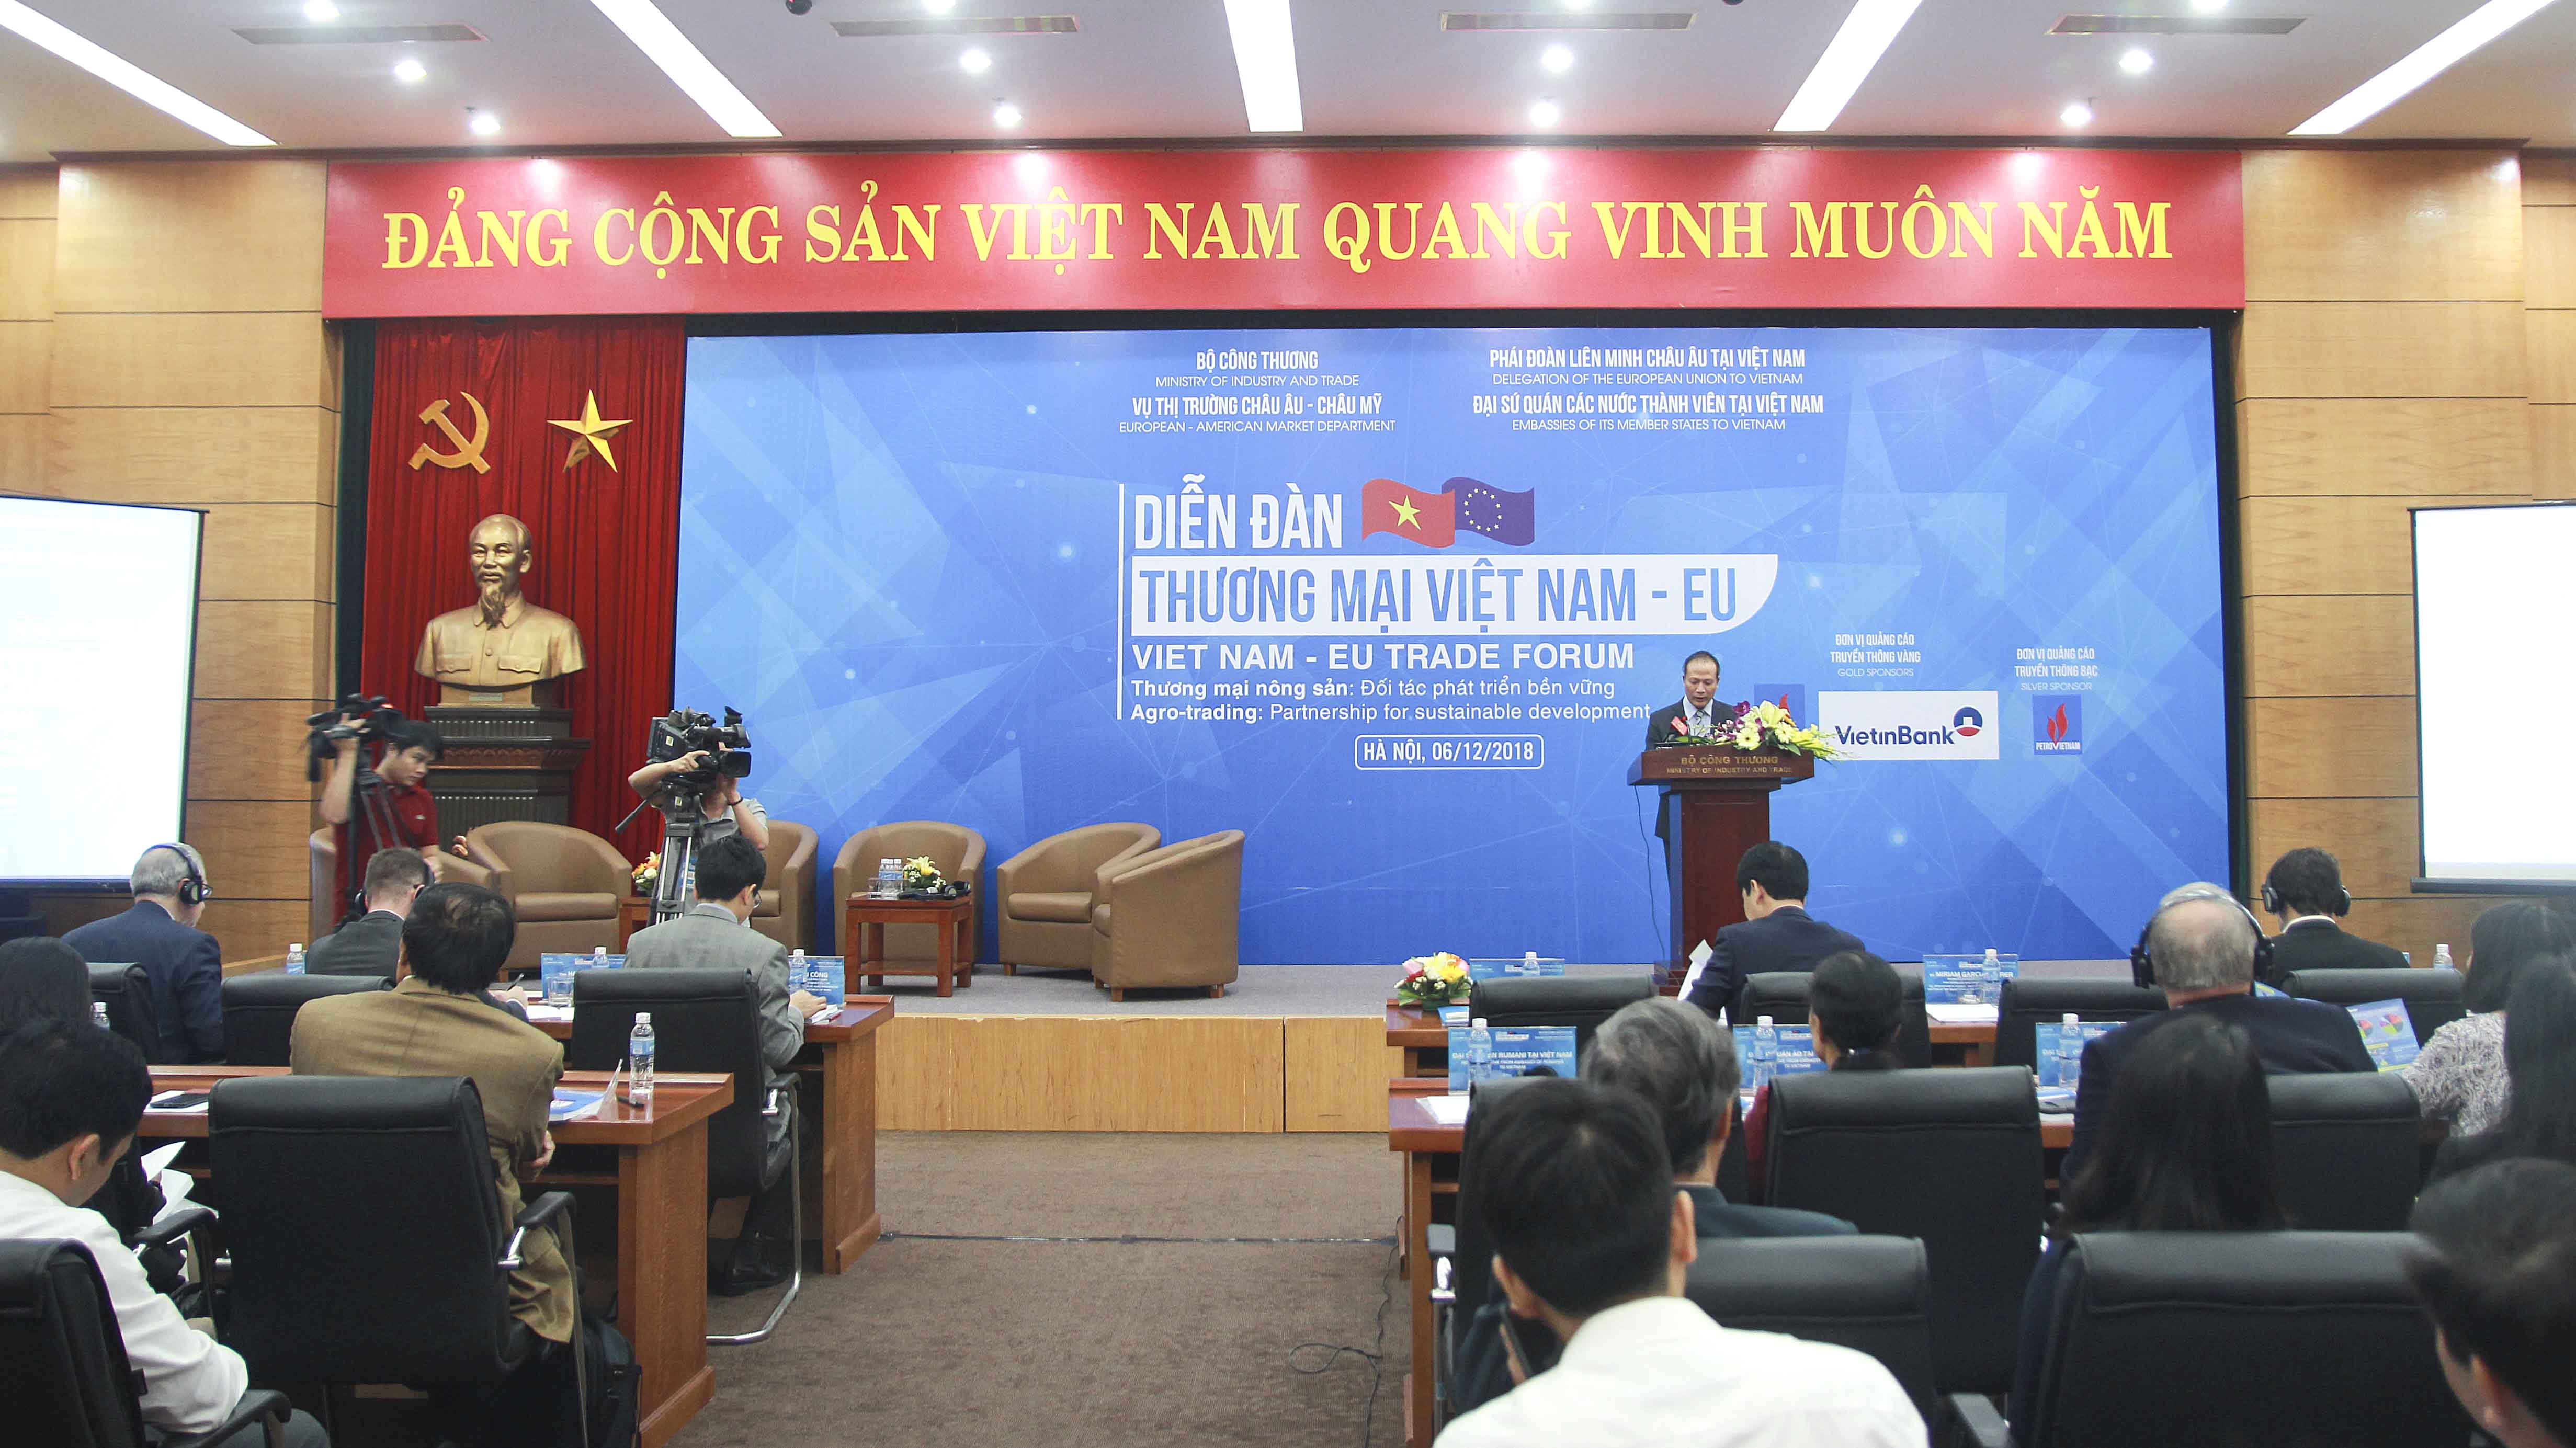 Diễn đàn Thương mại Việt Nam – EU với chủ đề “Thương mại Nông sản Việt Nam – EU: Đối tác phát triển bền vững” tổ chức sáng 6/12/2018 tại Hà Nội.